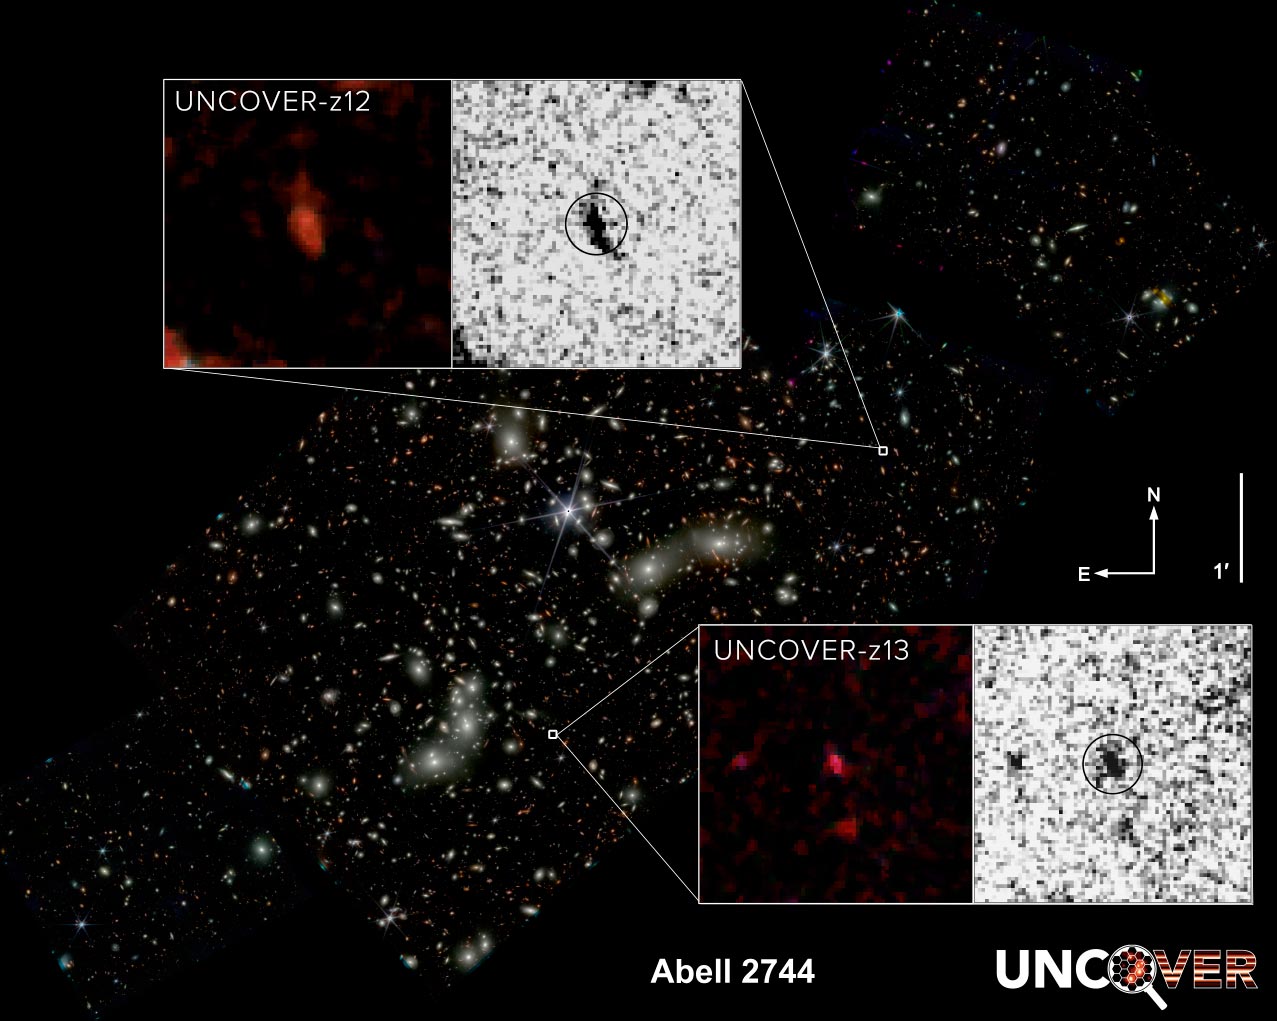 El Telescopio Espacial Webb encuentra galaxias que desafían las teorías astronómicas